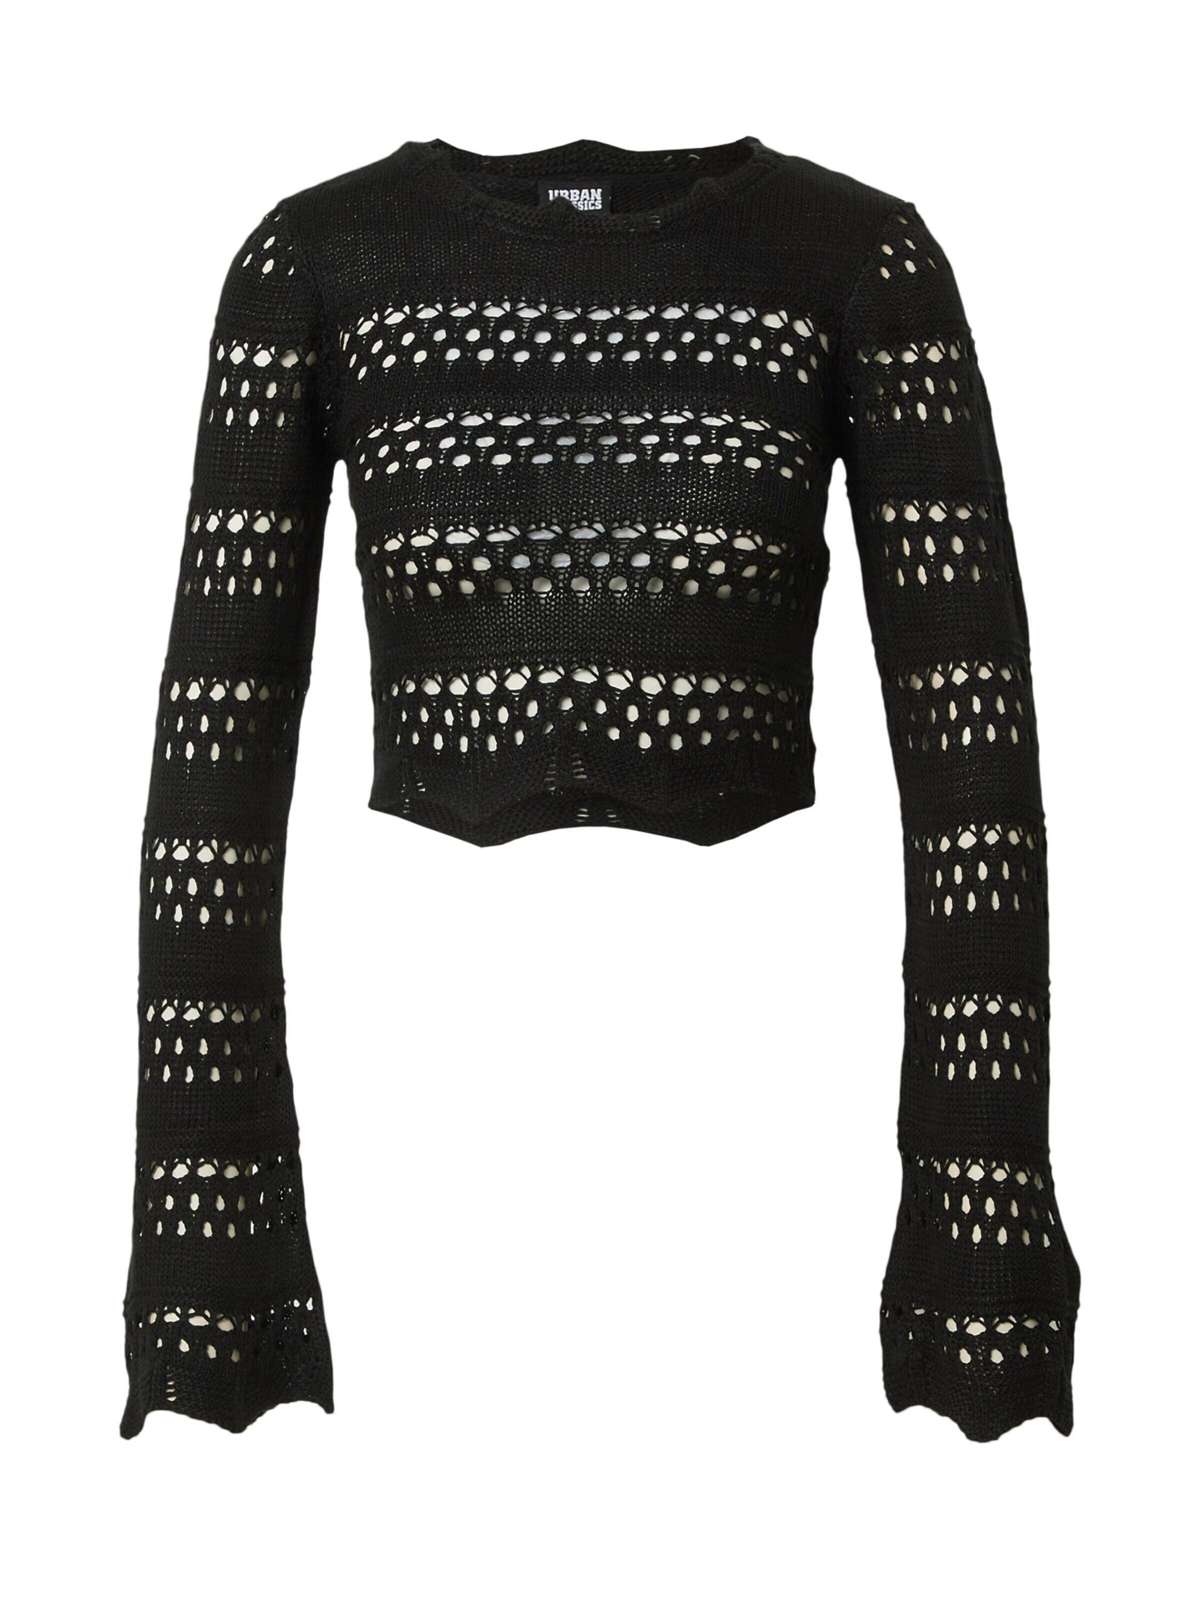 Женский укороченный вязаный свитер с капюшоном крючком (1 шт.)